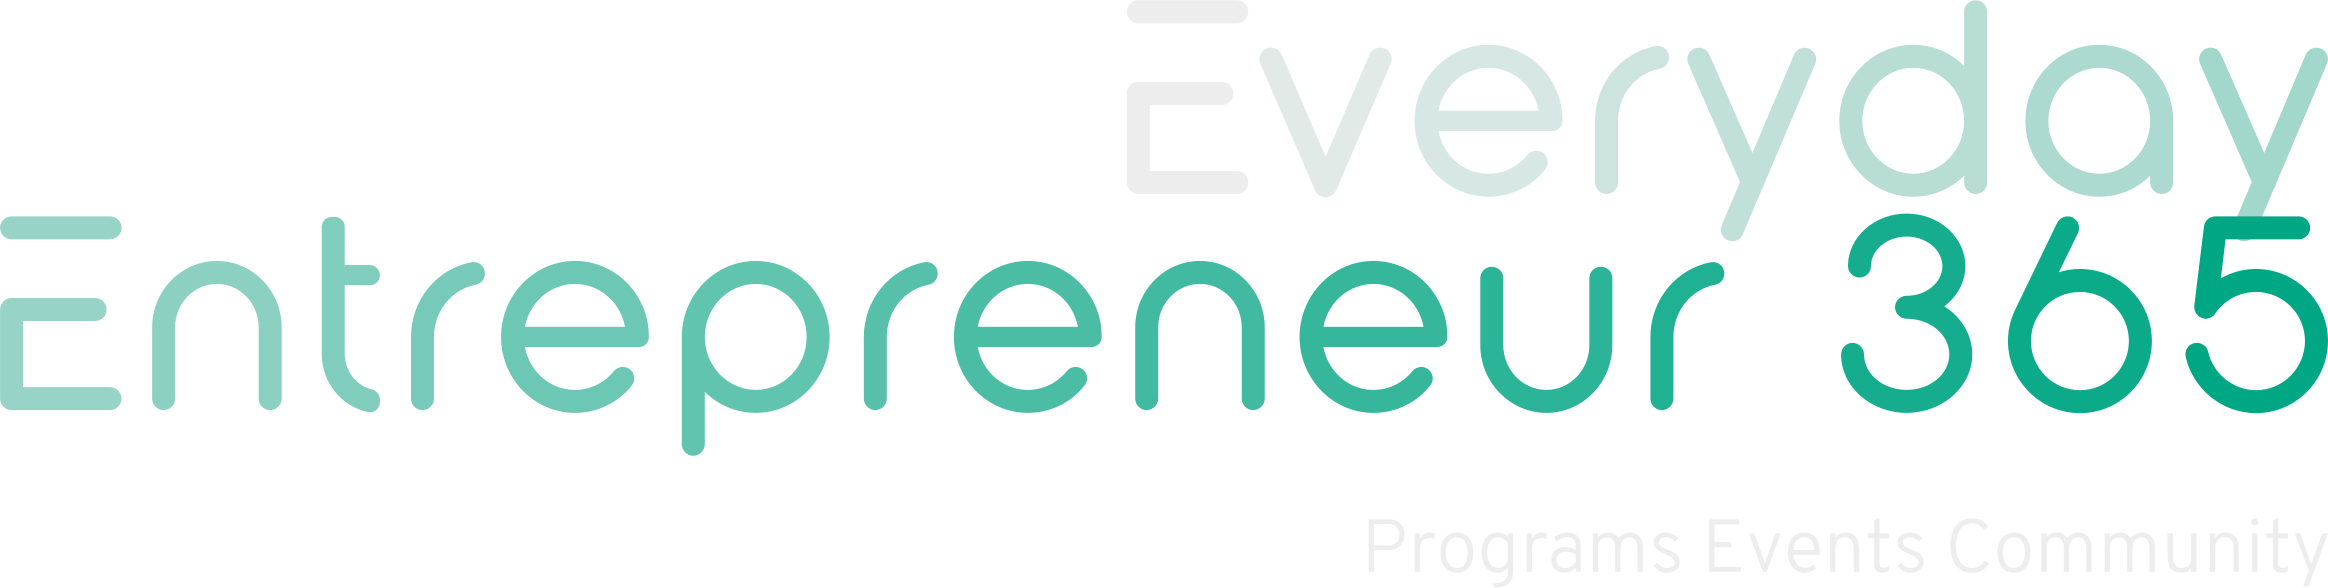 Everyday Entrepreneur 365 logo